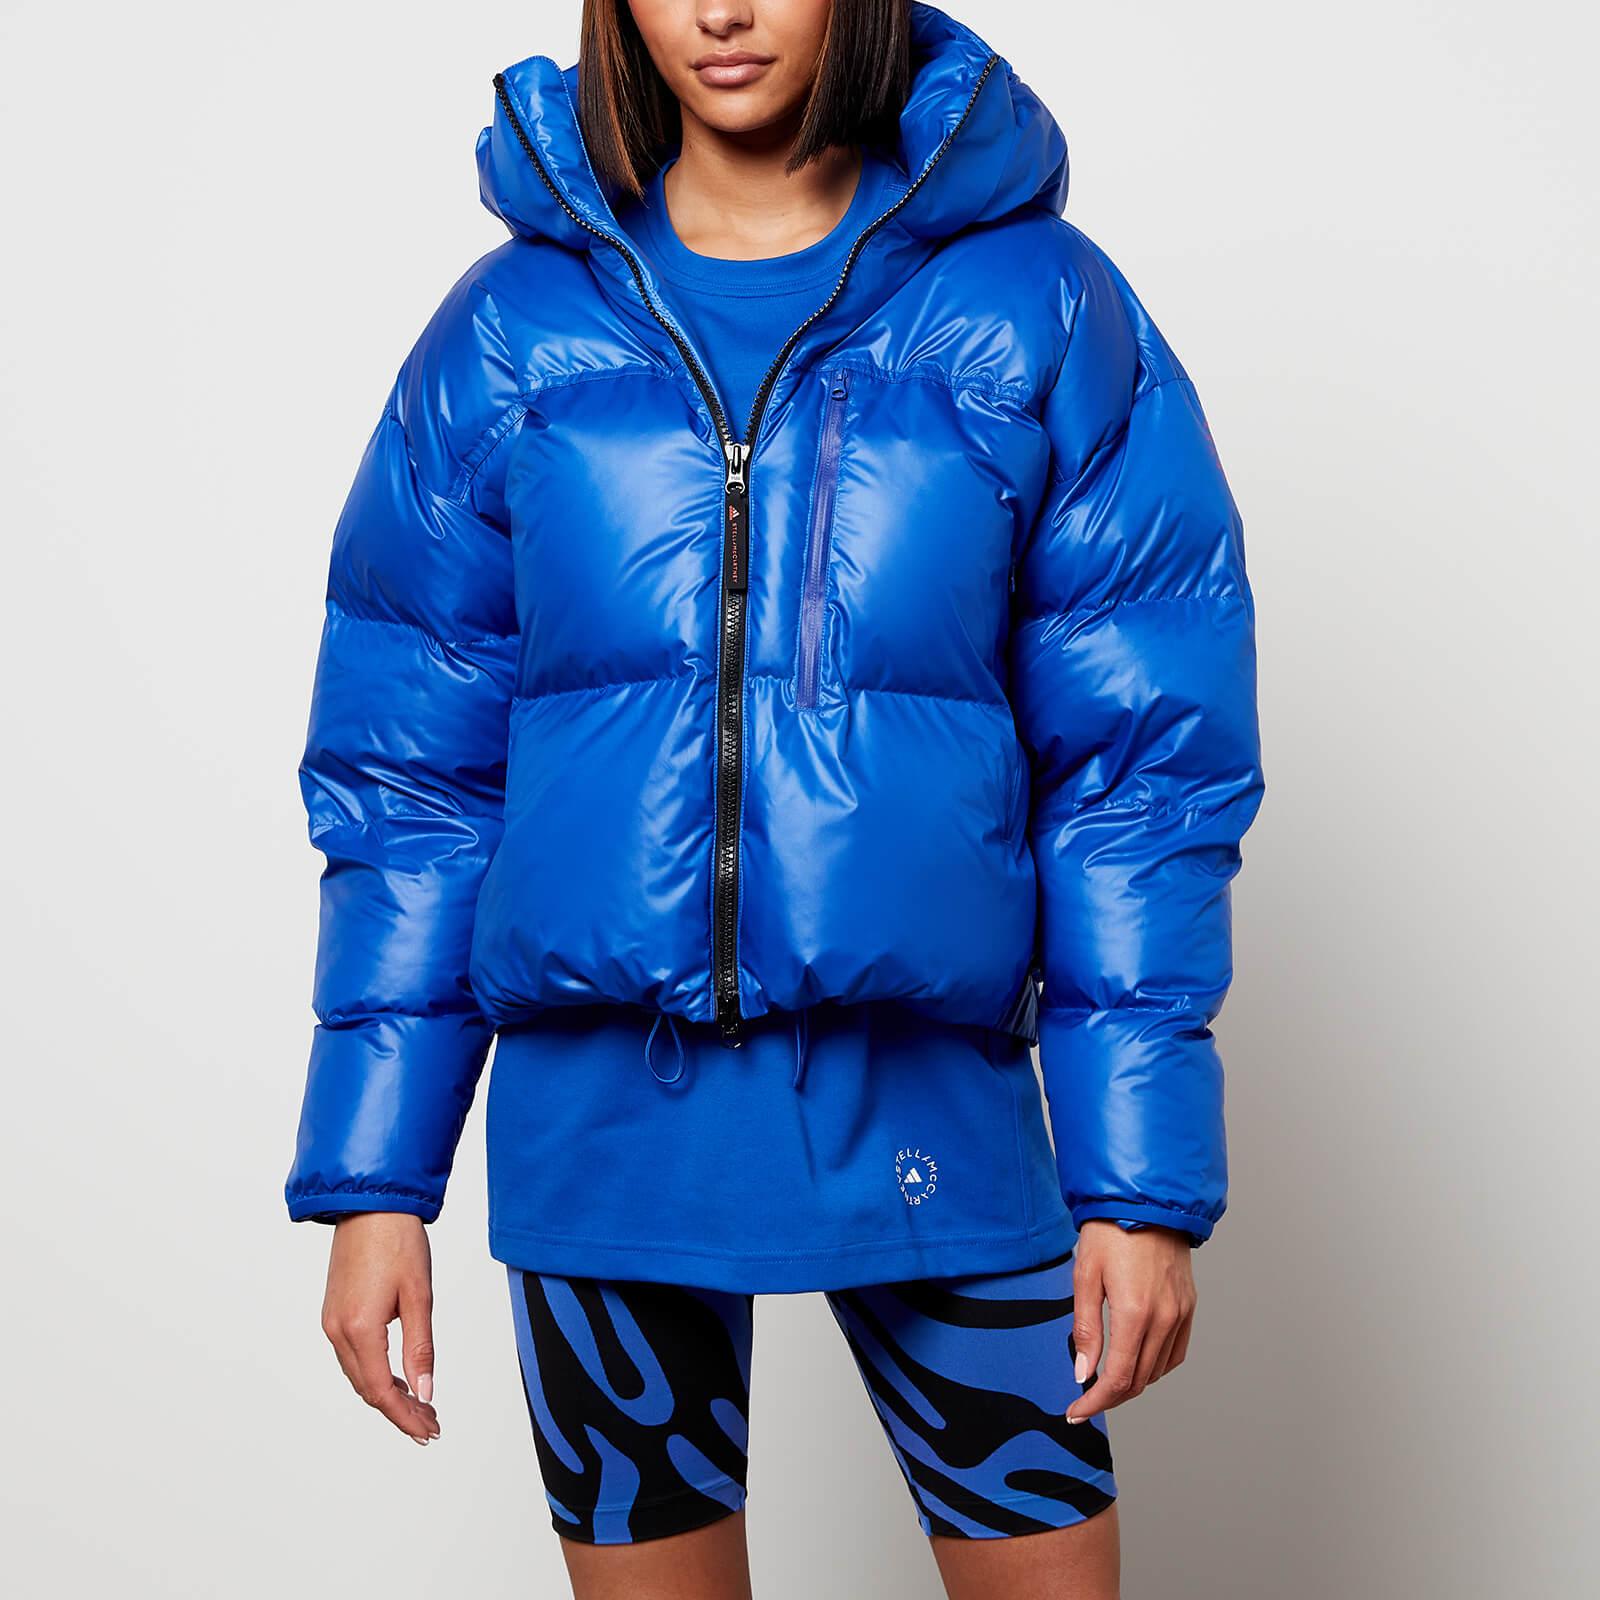 Adidas By Stella McCartney Short Puffer Jacket In Blue Lyst, 46% OFF